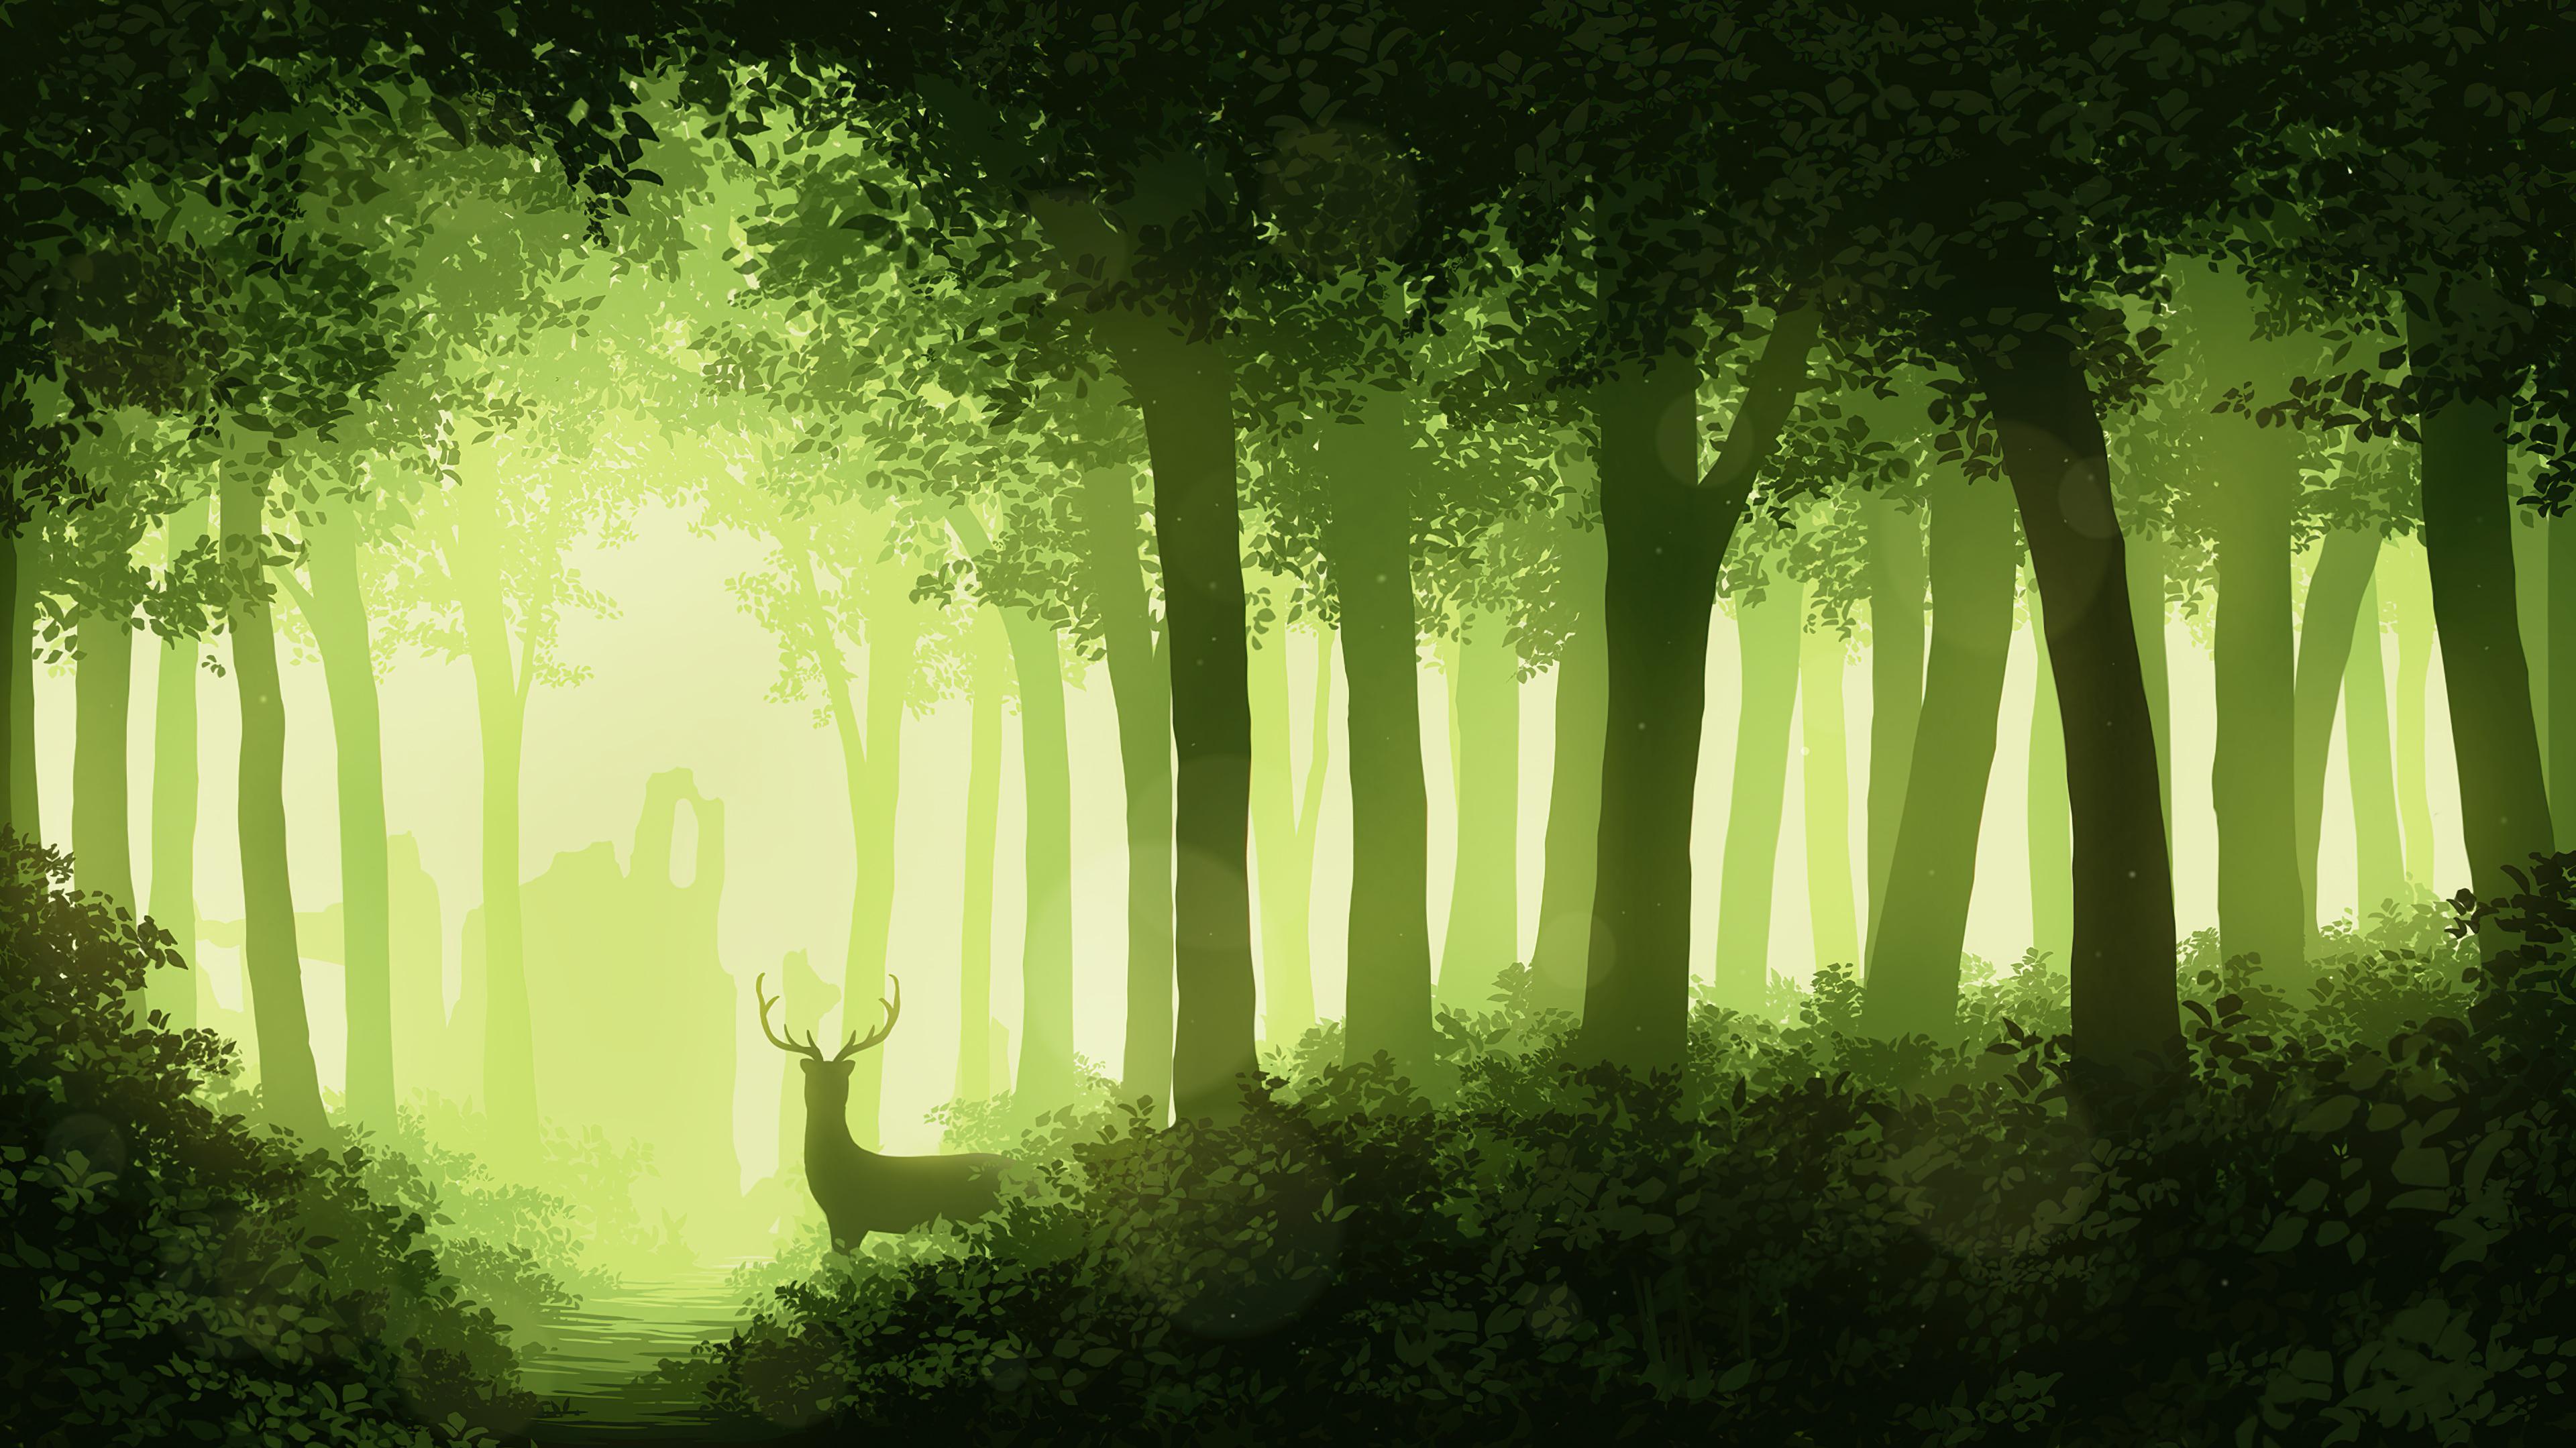 Deer Forest 4k HD Artist Wallpaper Image Background